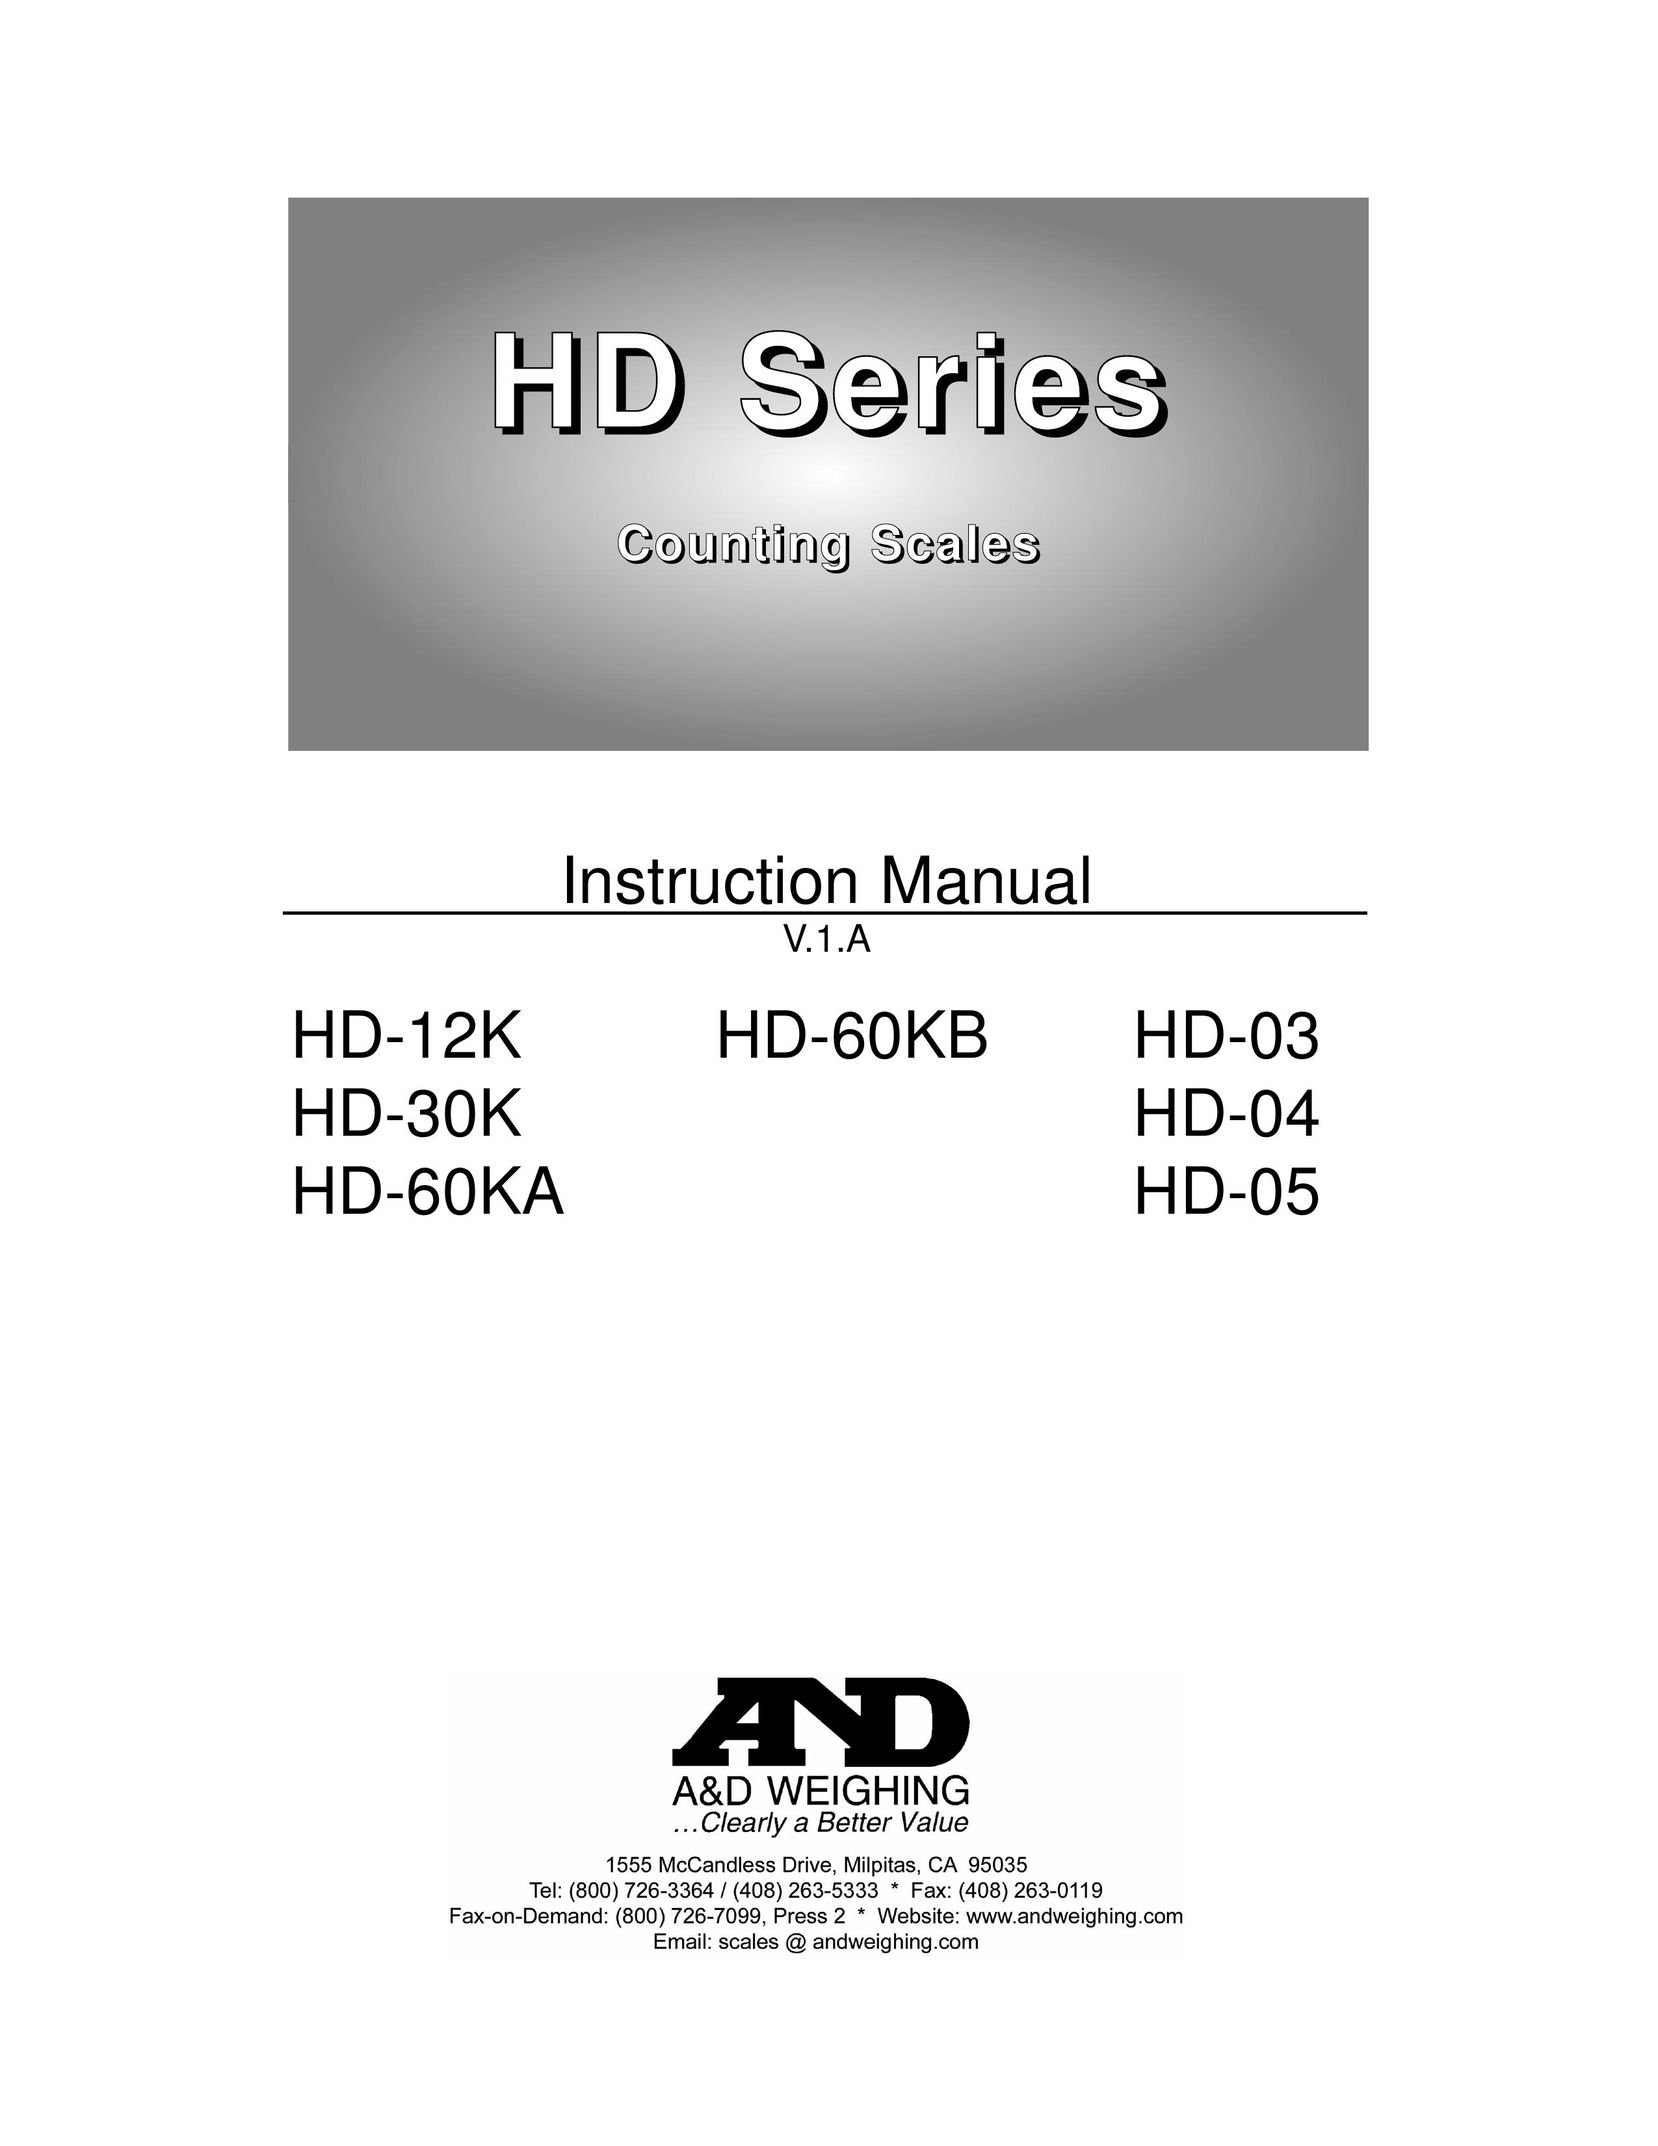 A&D HD-03 Building Set User Manual